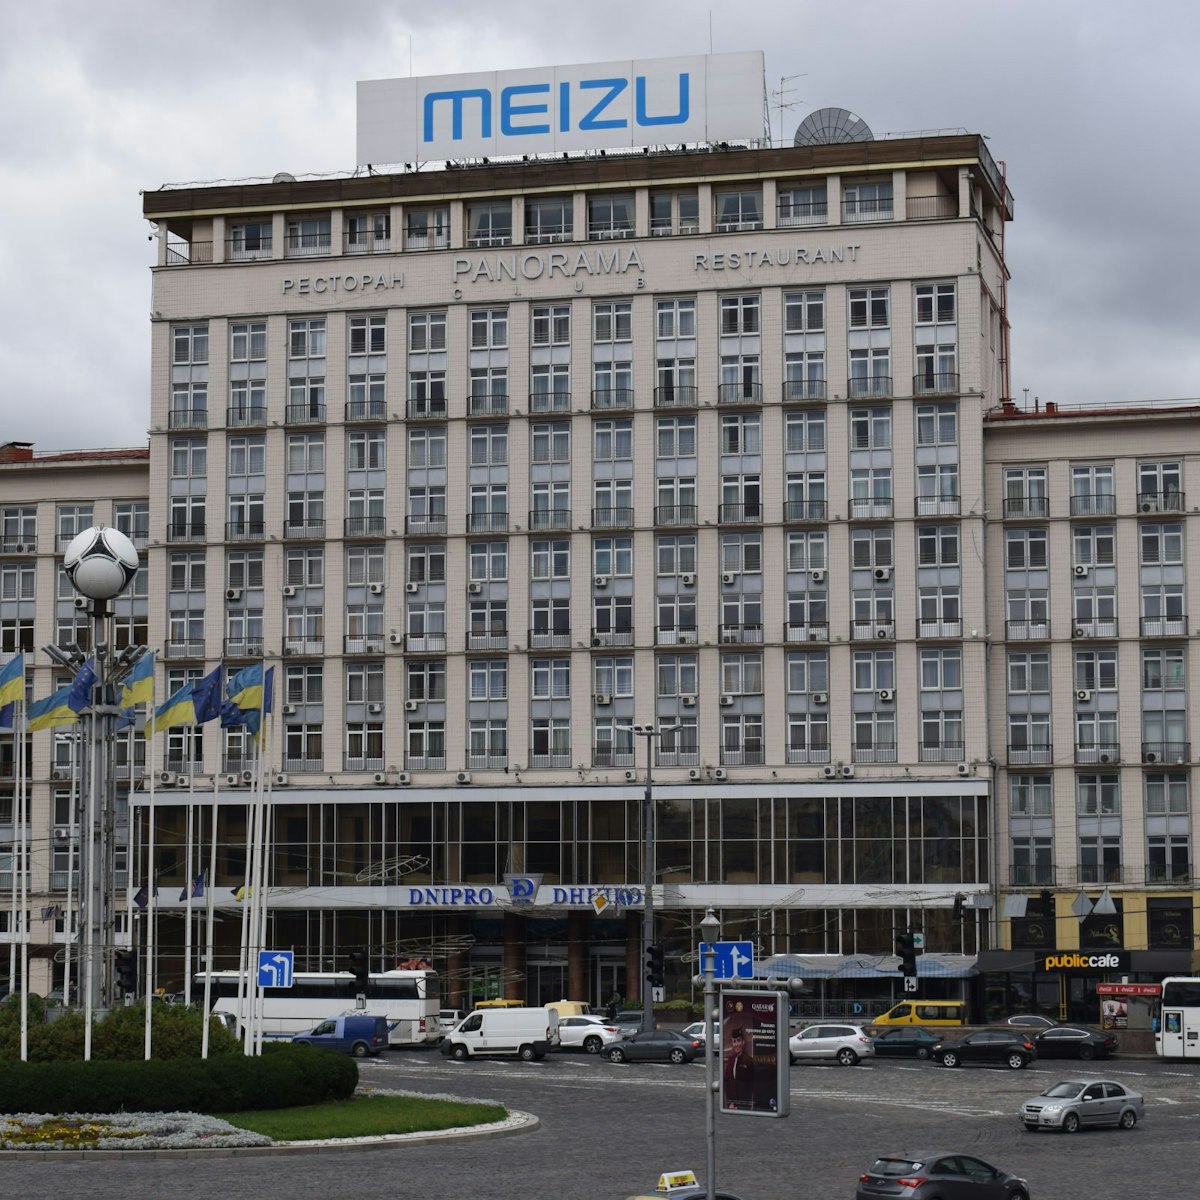 The giant Dnipro Hotel on Khreshchatyk boulevard in Kyiv